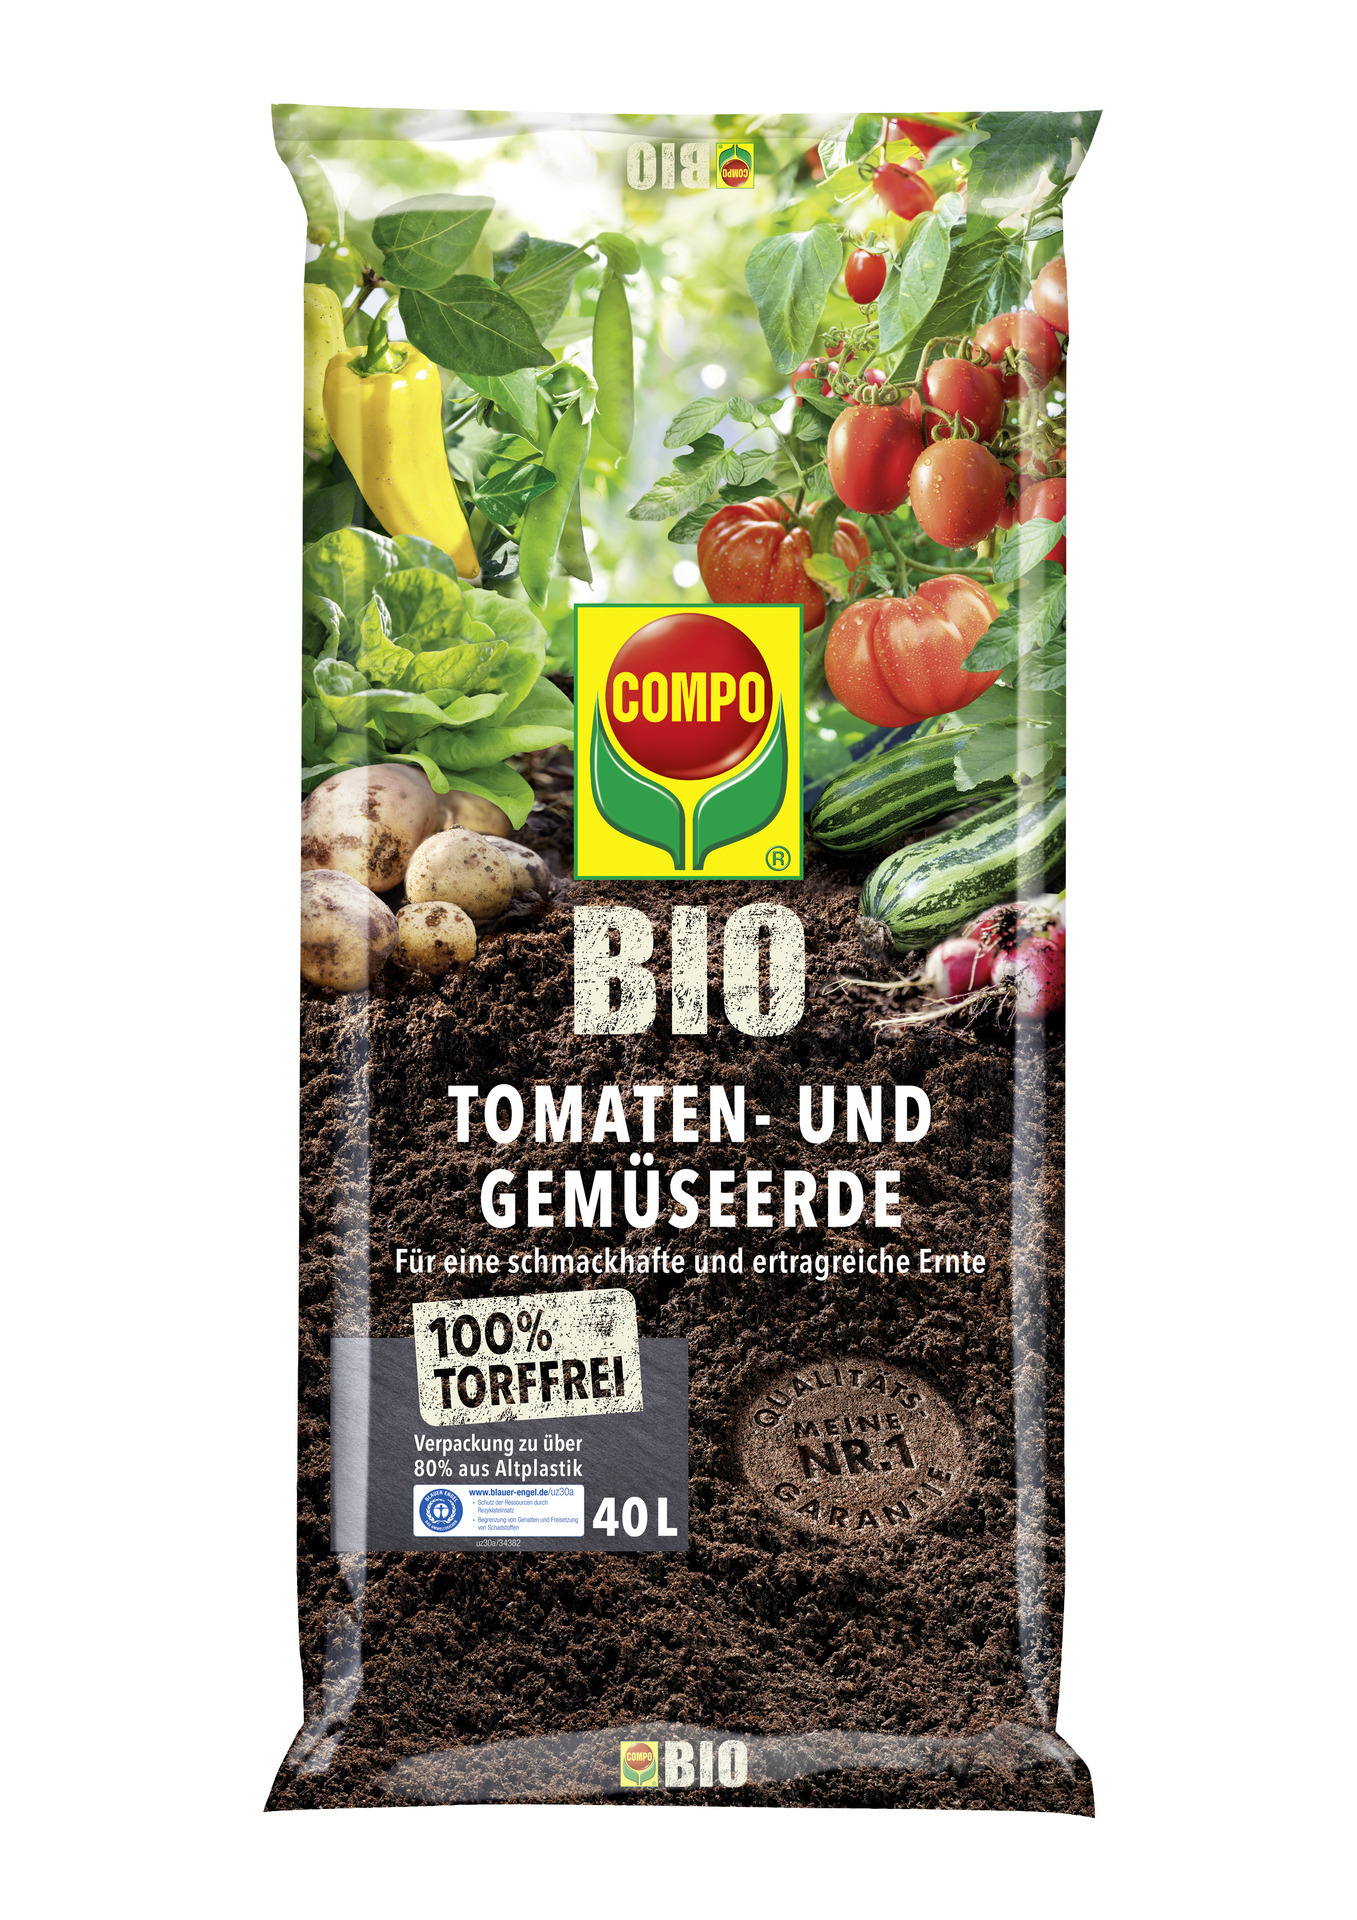 BIO Tomaten- und Gemüseerde, torffrei